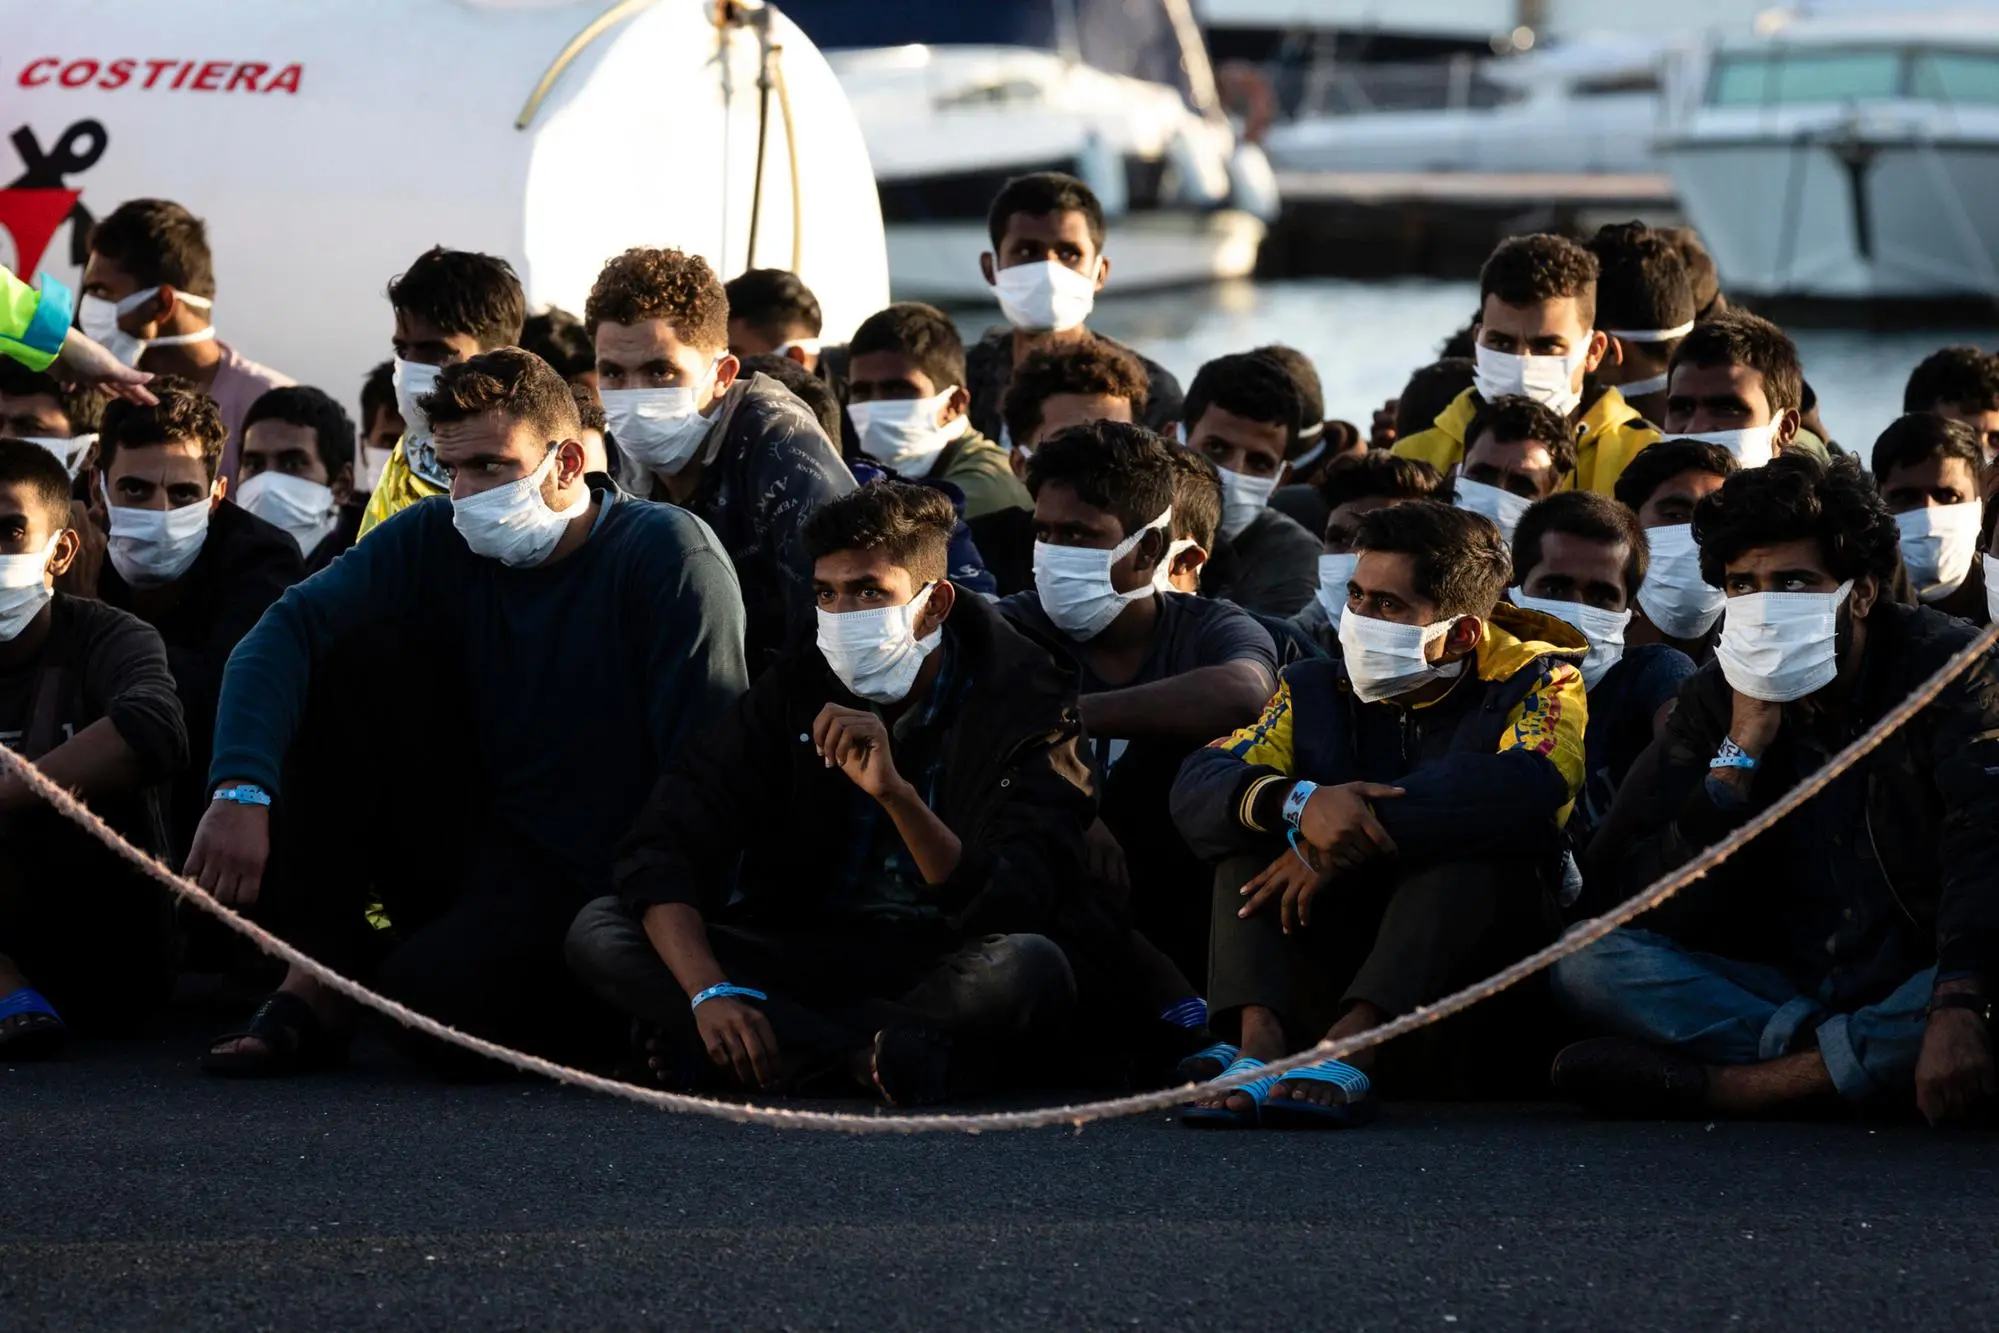 Migranti arrivati sulle coste italiane  (Ansa)